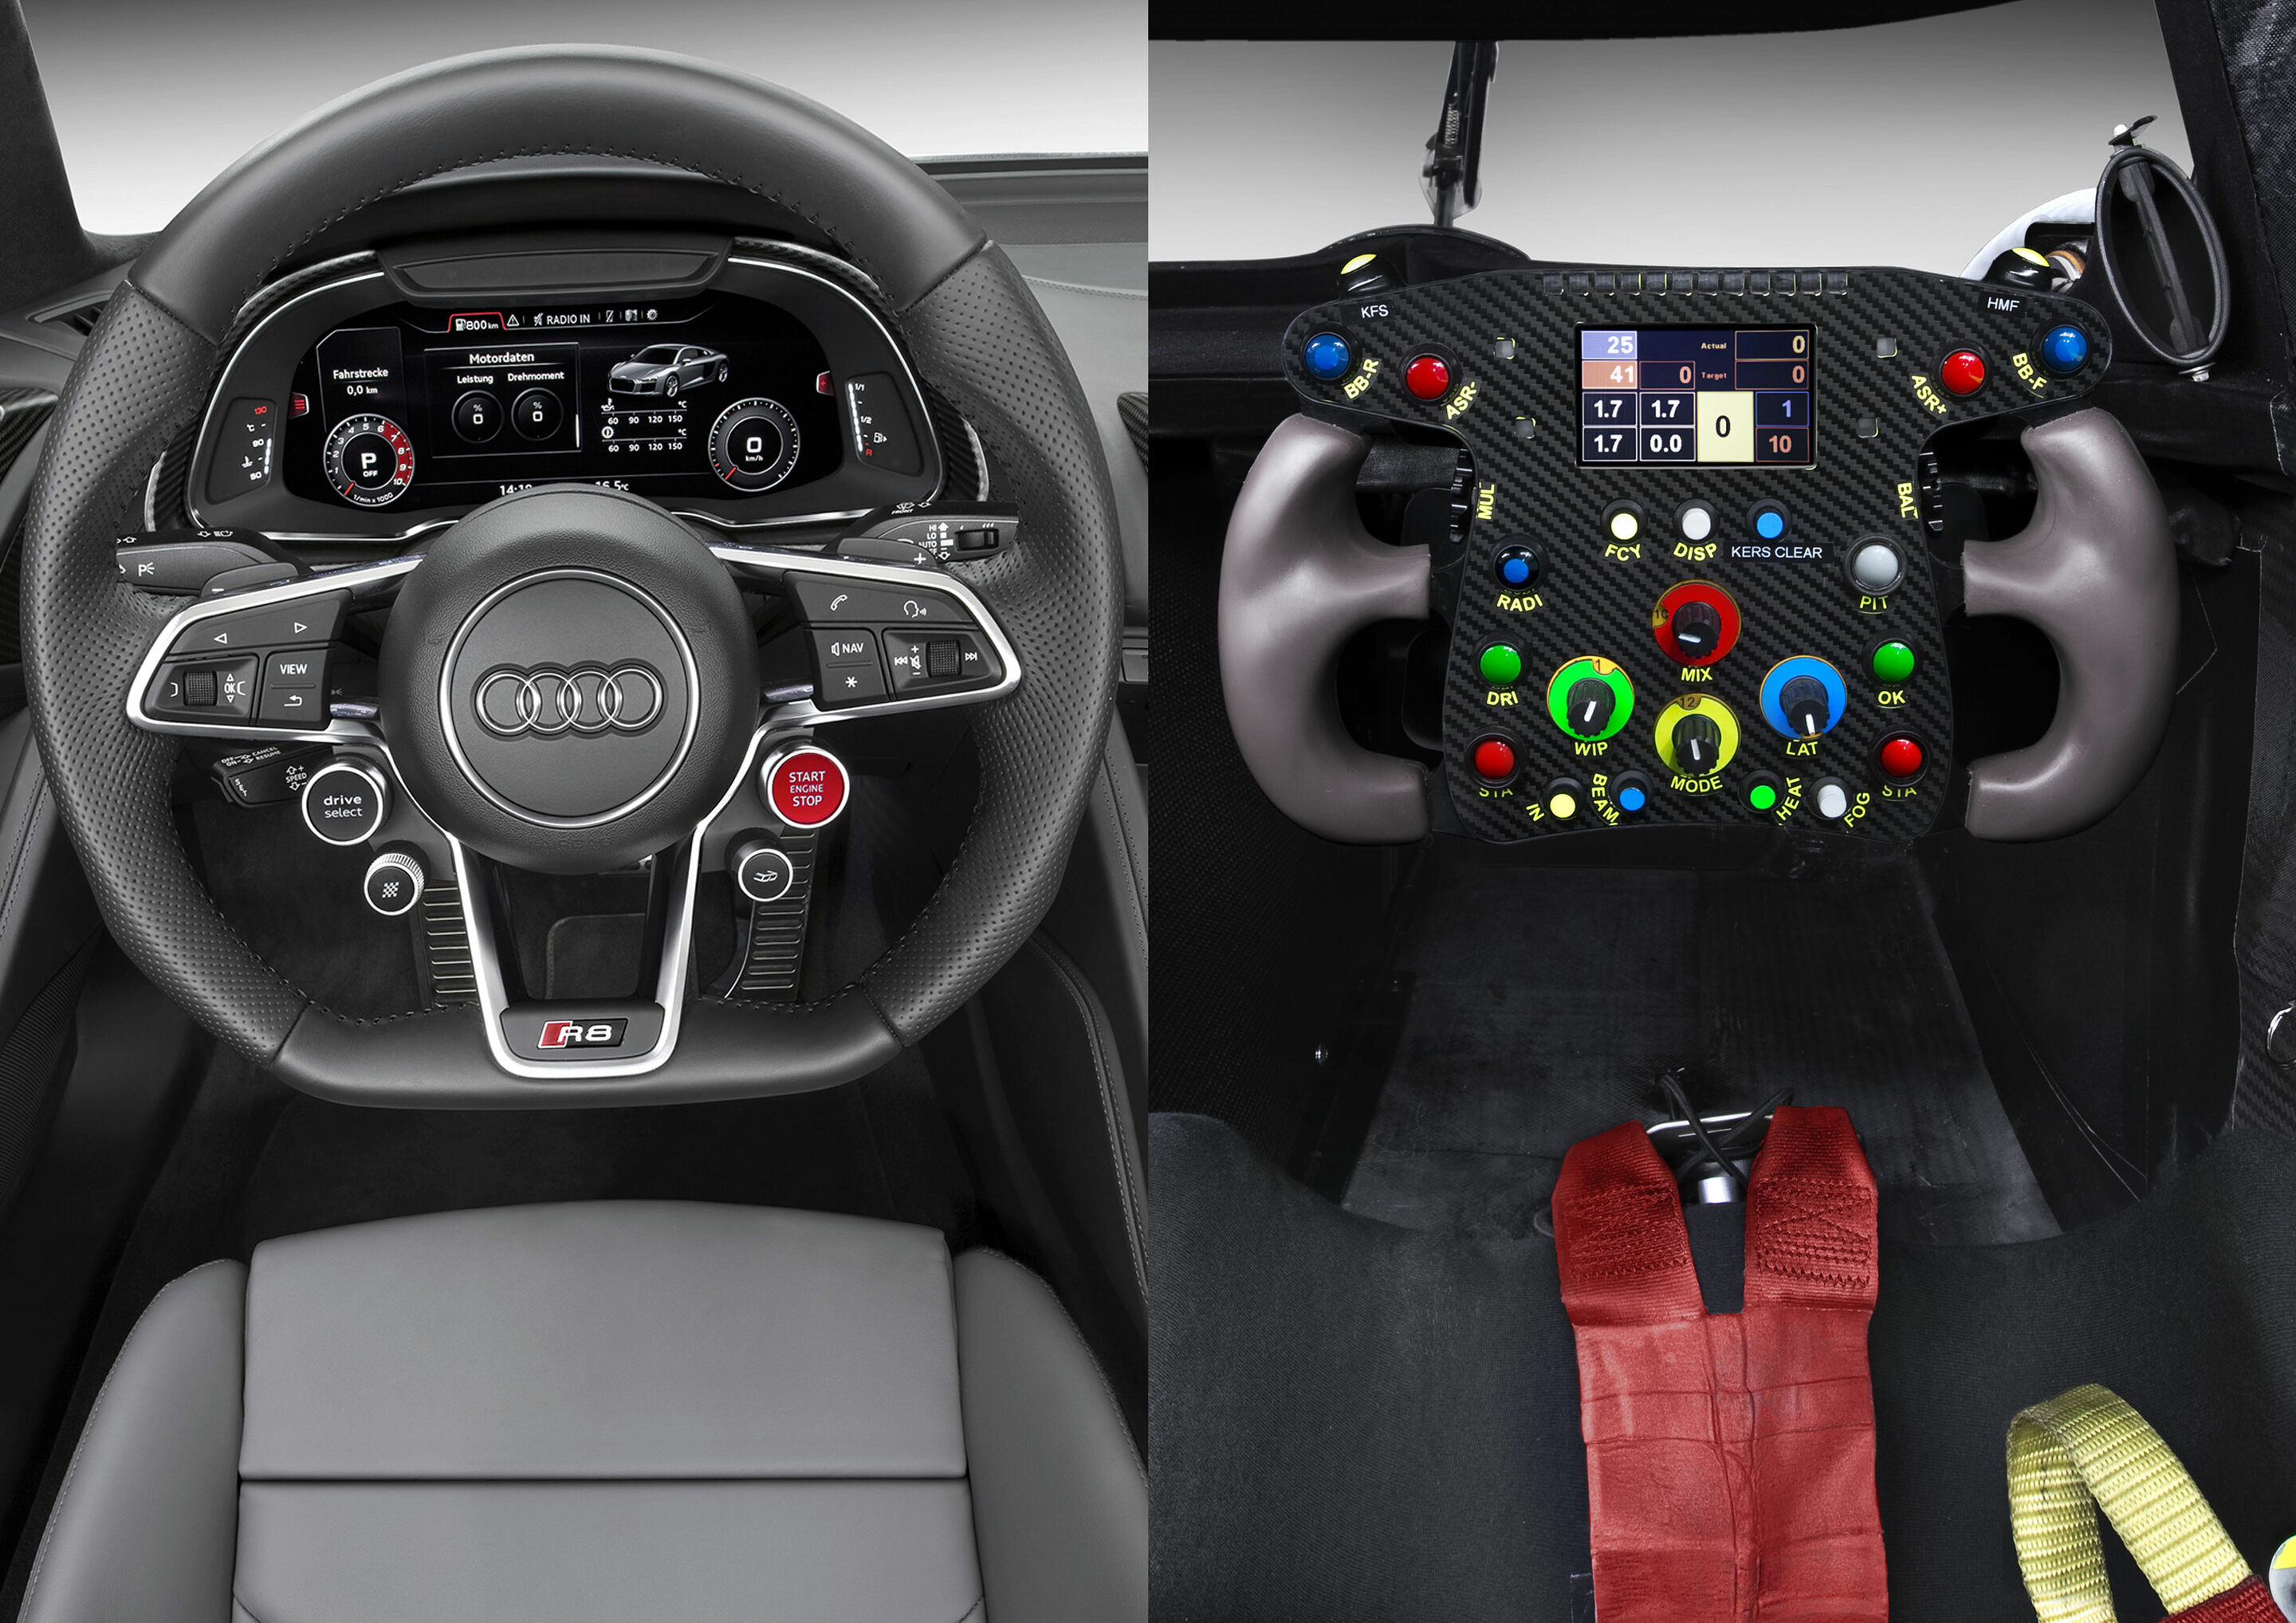 Cockpit view Audi R8 and Audi R18 e-tron quattro